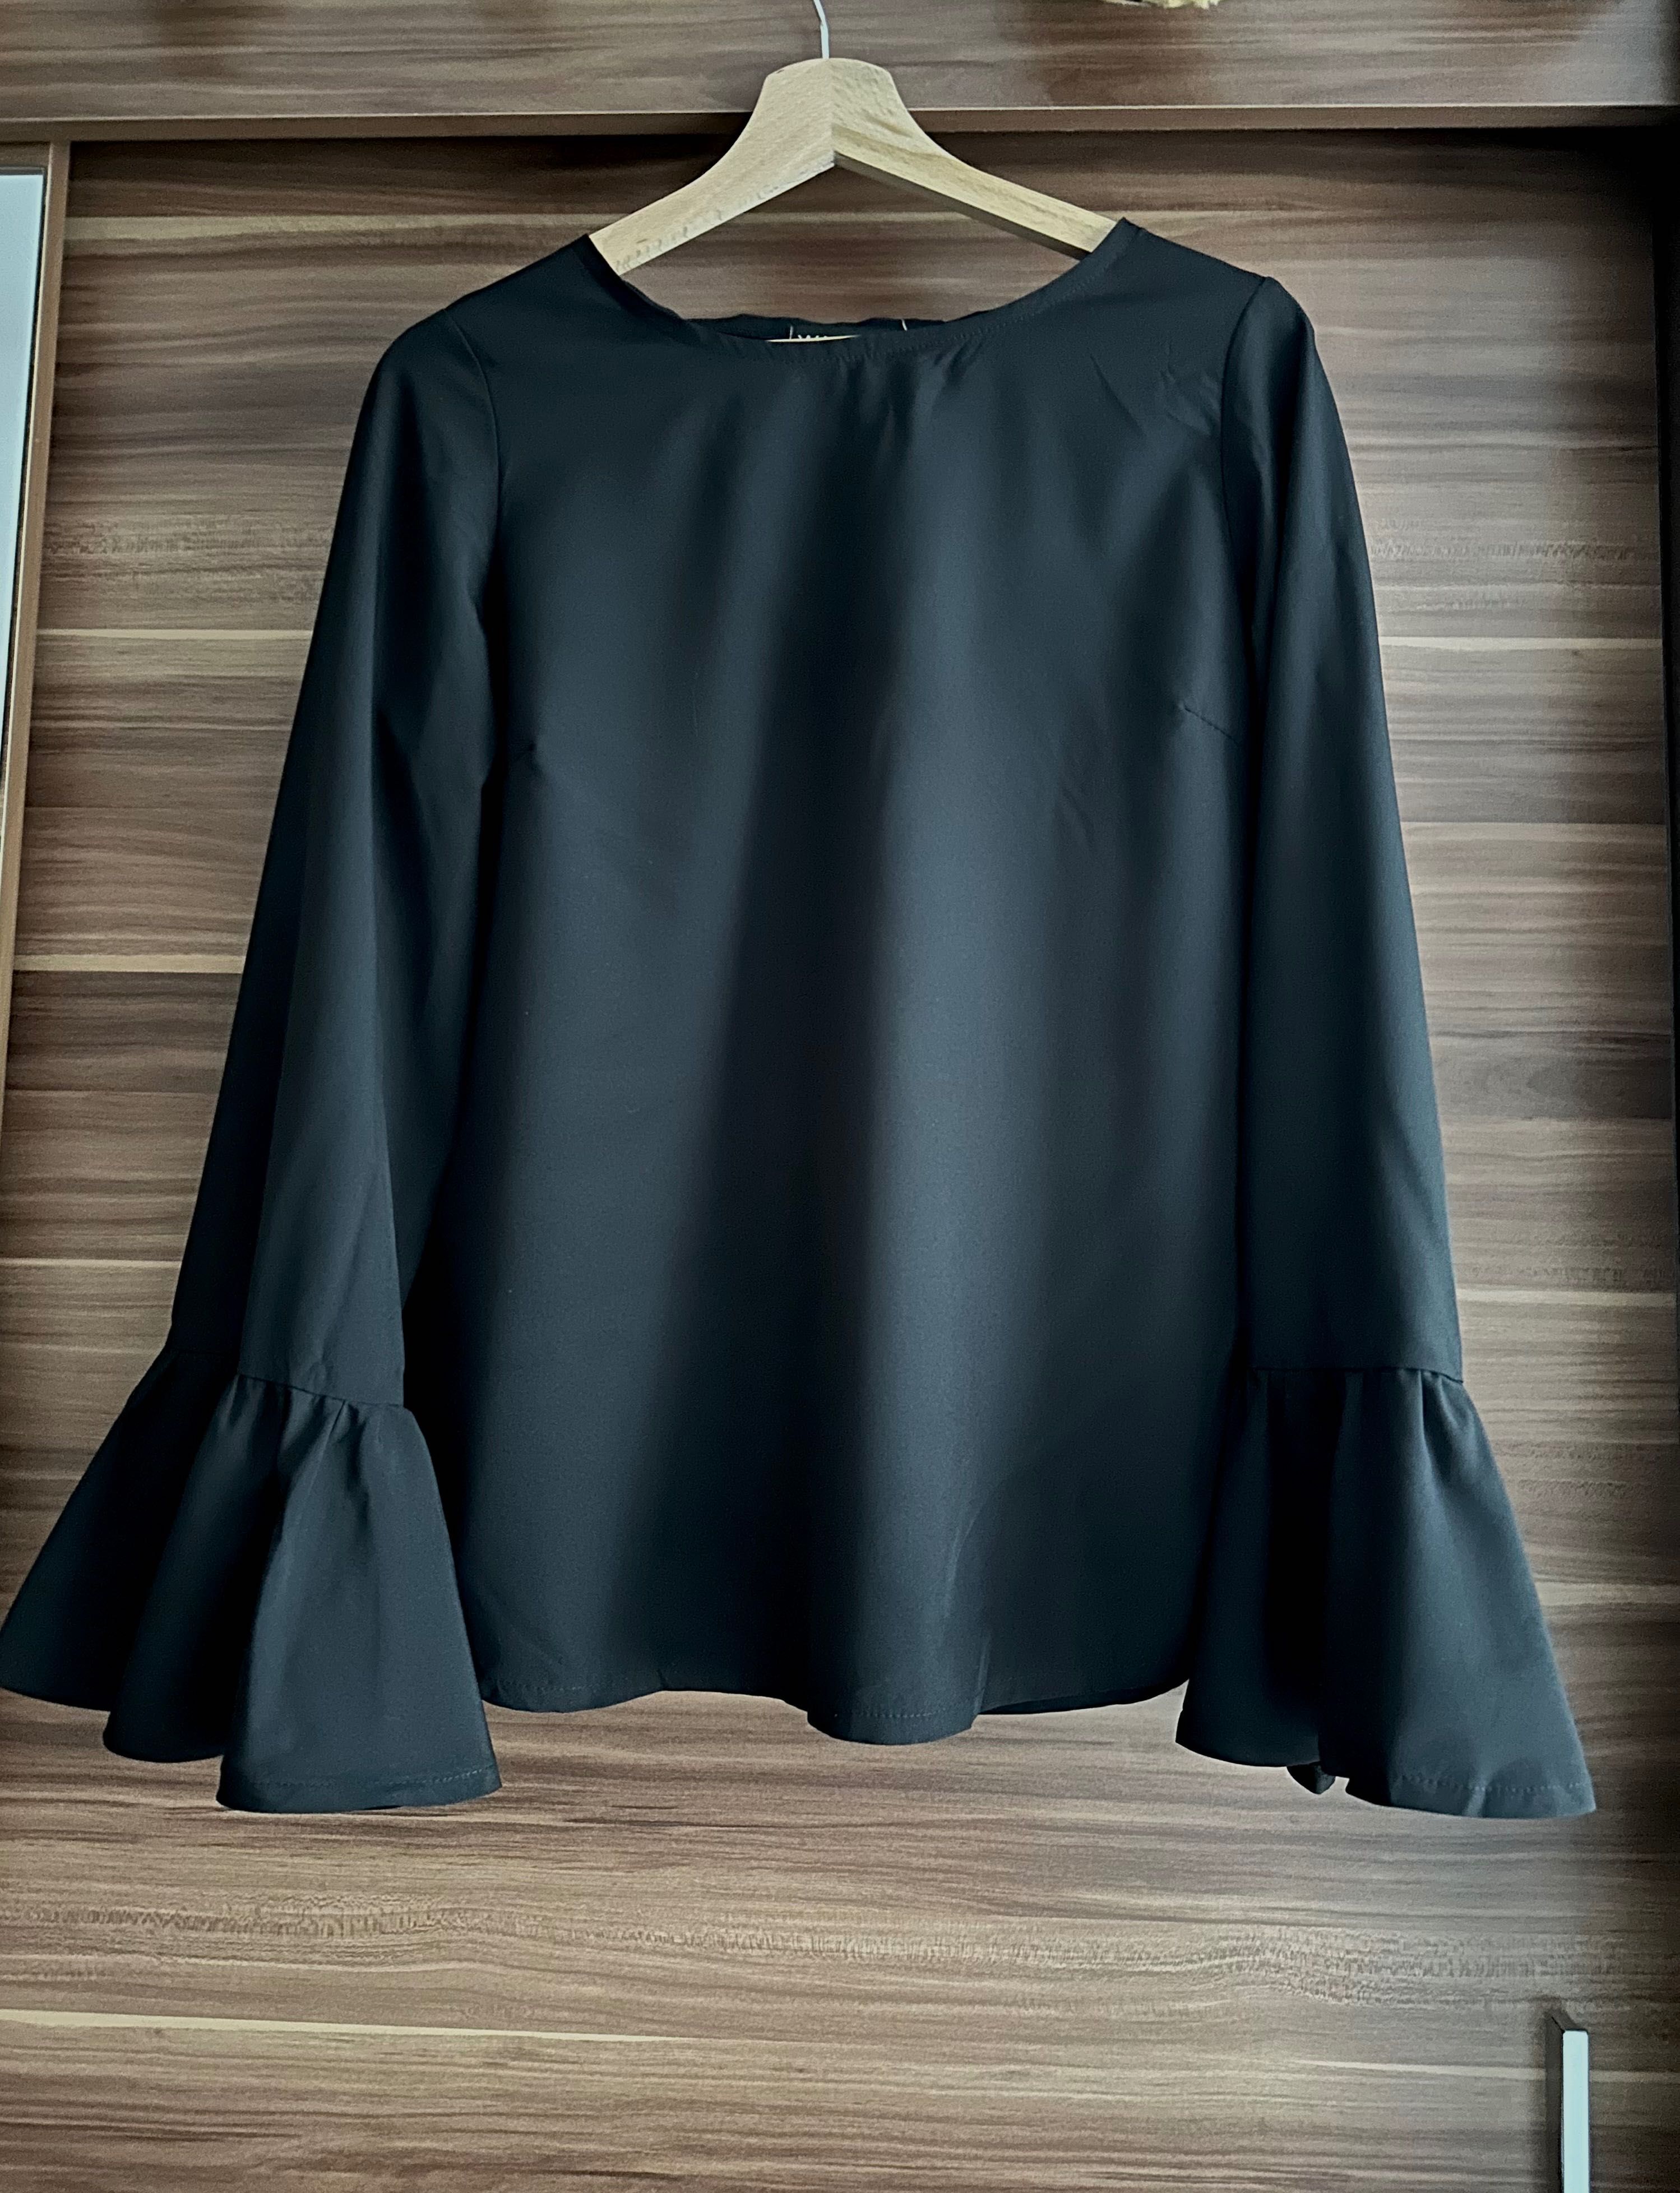 Koszula elegancka, czarna z luźnymi rękawami i falbanką przy rekawie